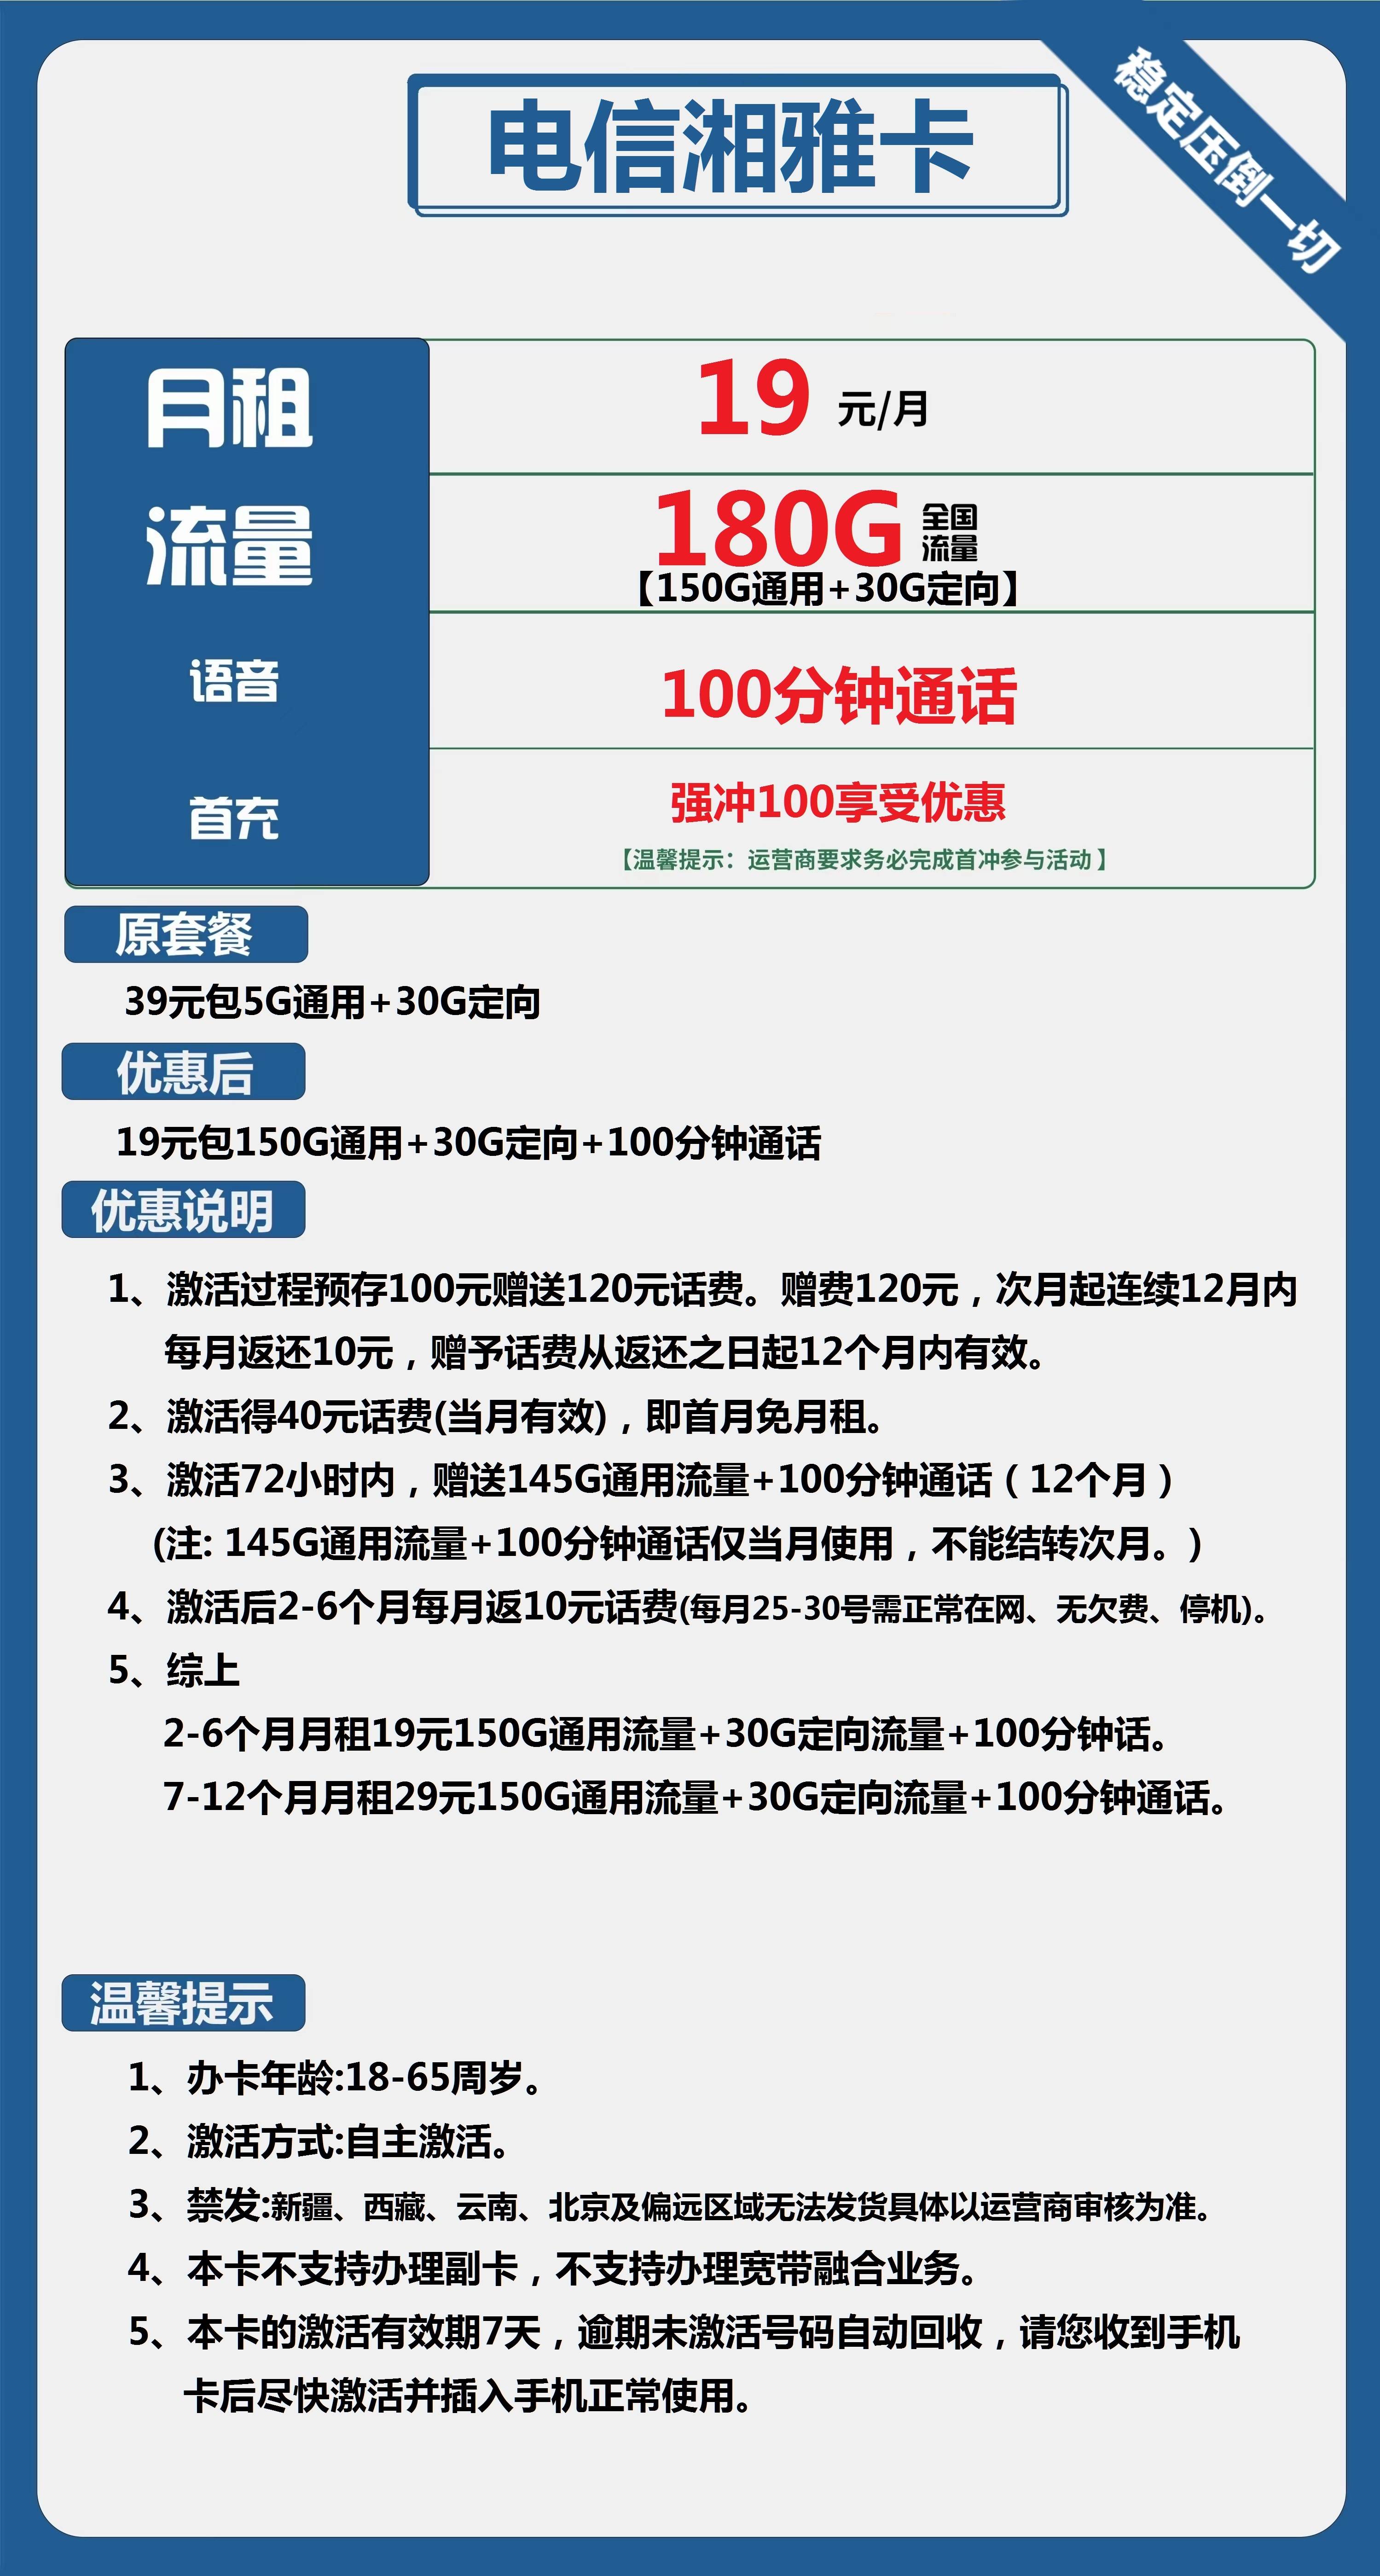 电信湘雅卡19元150G通用流量+30G定向流量+100分钟通话